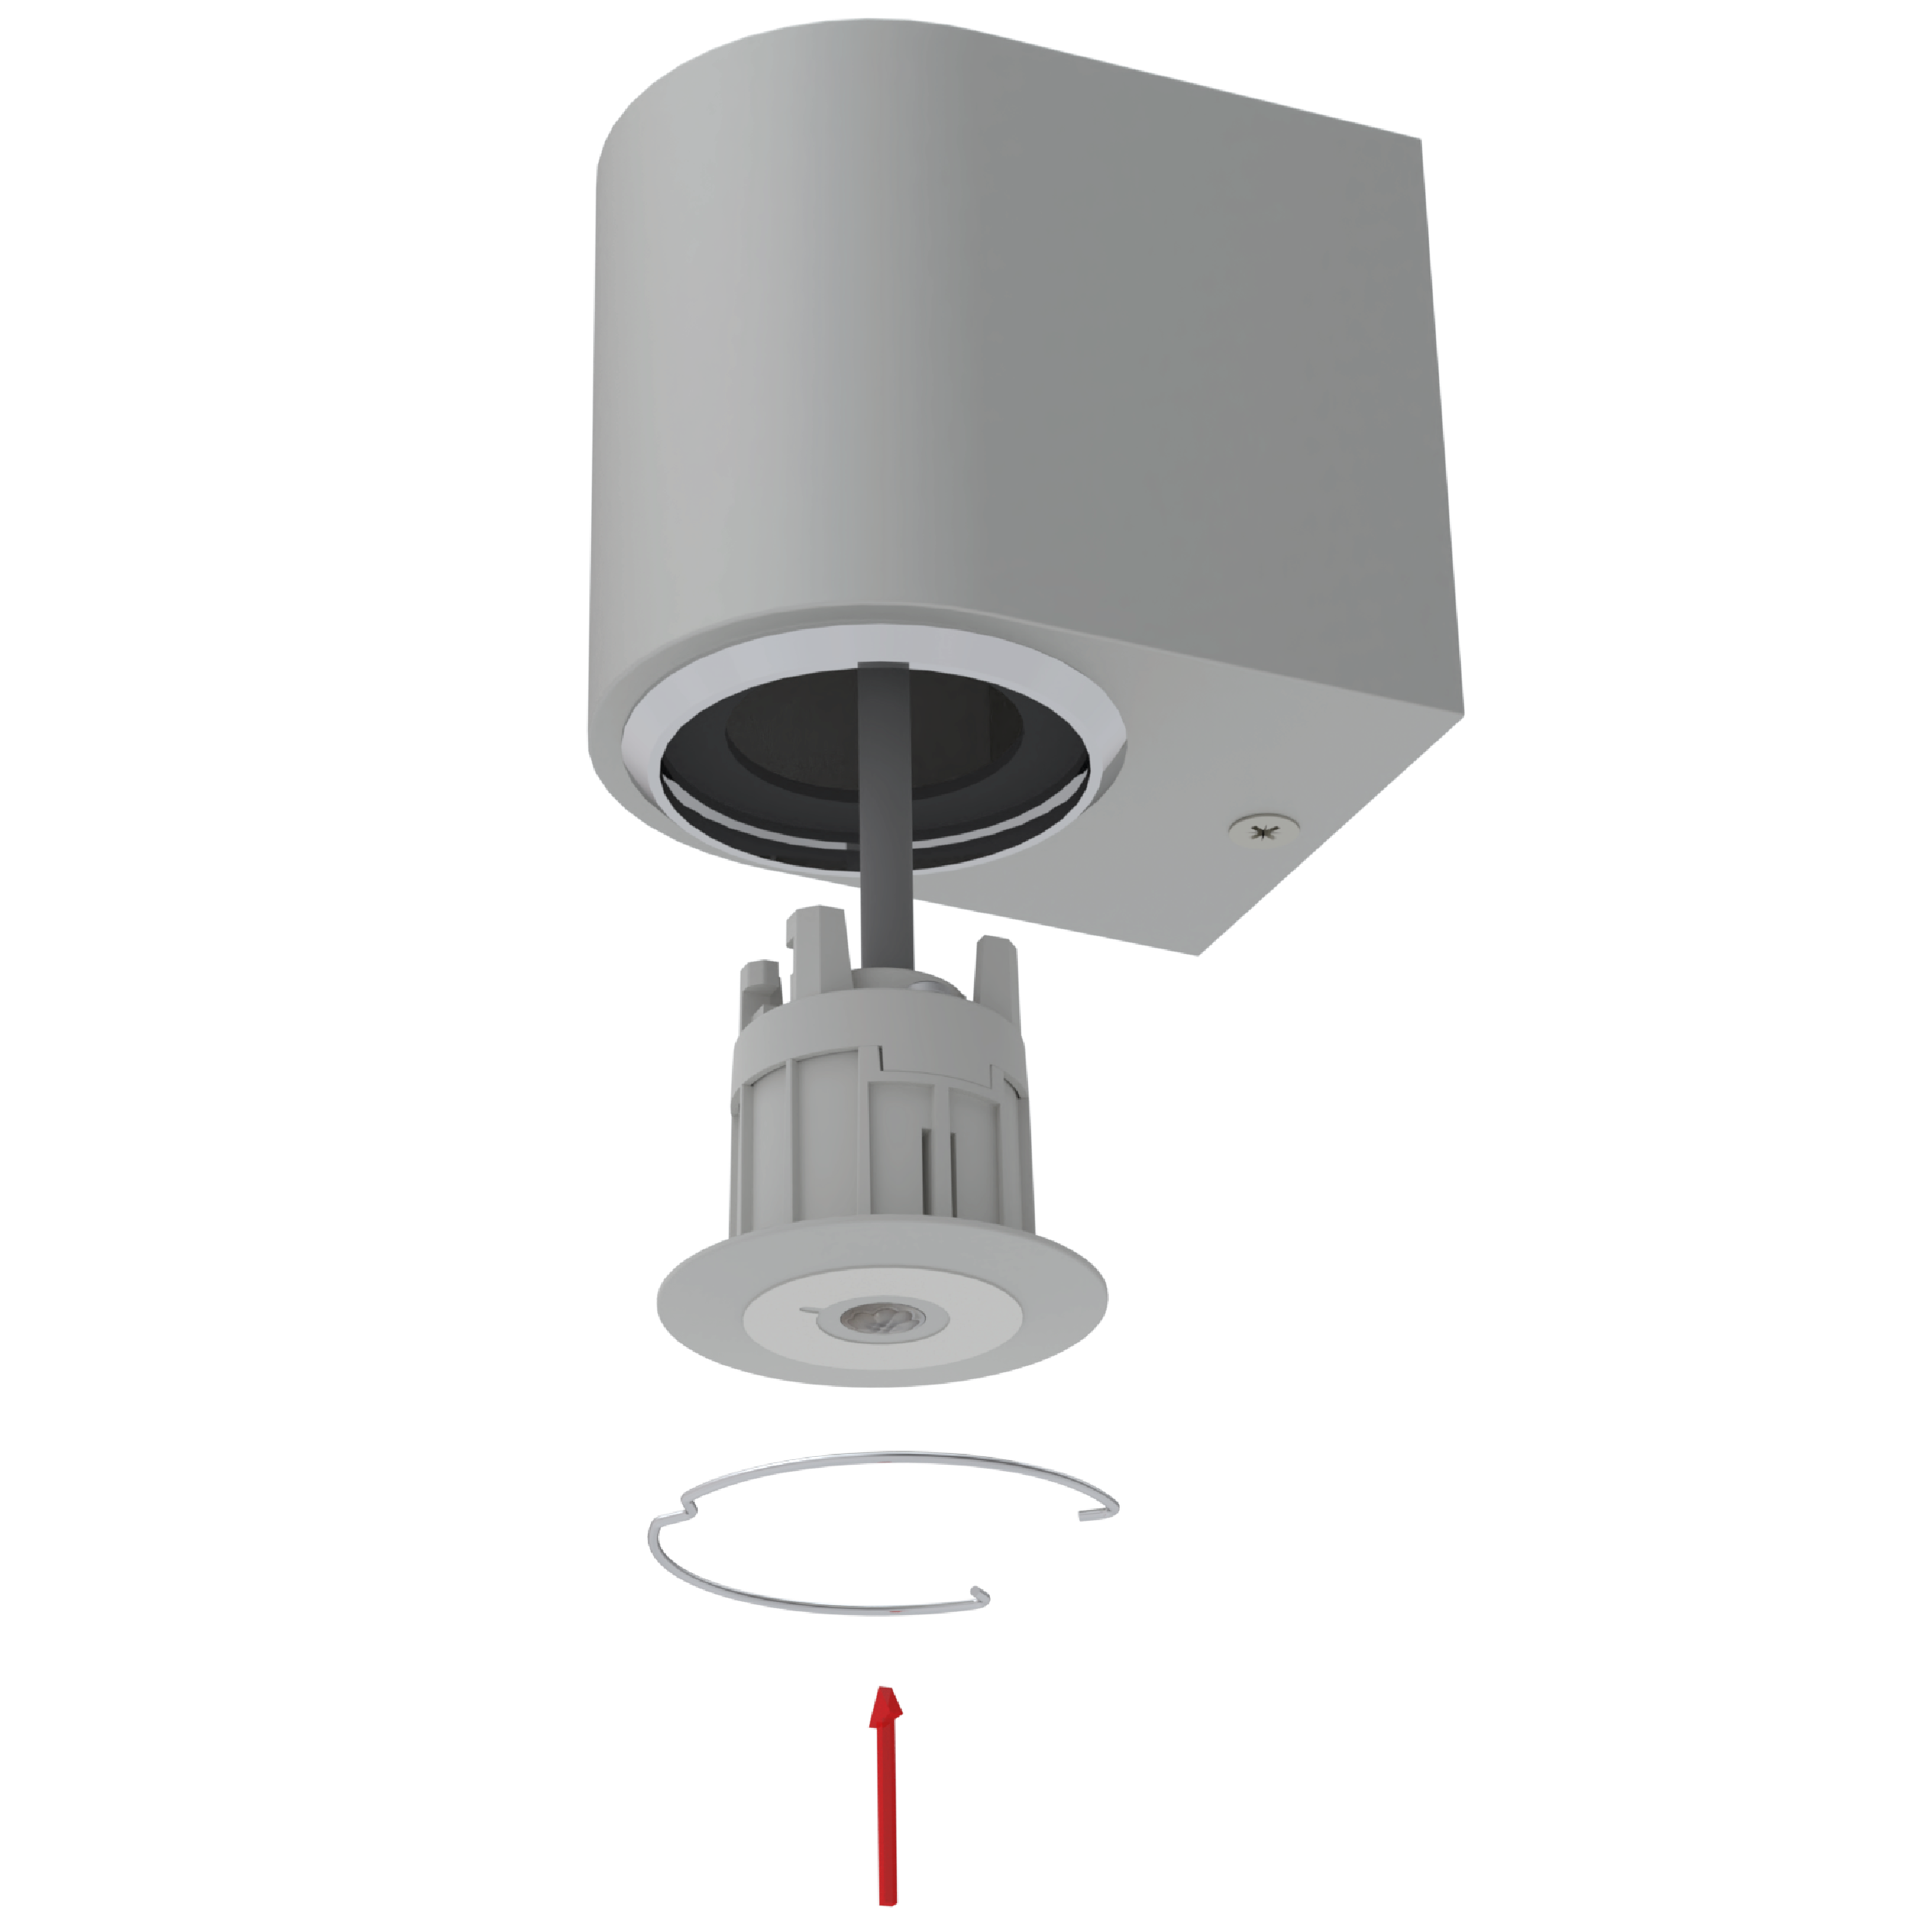 Black Faradite Motion Sensor 360 Volt Free dry contact push fit terminals